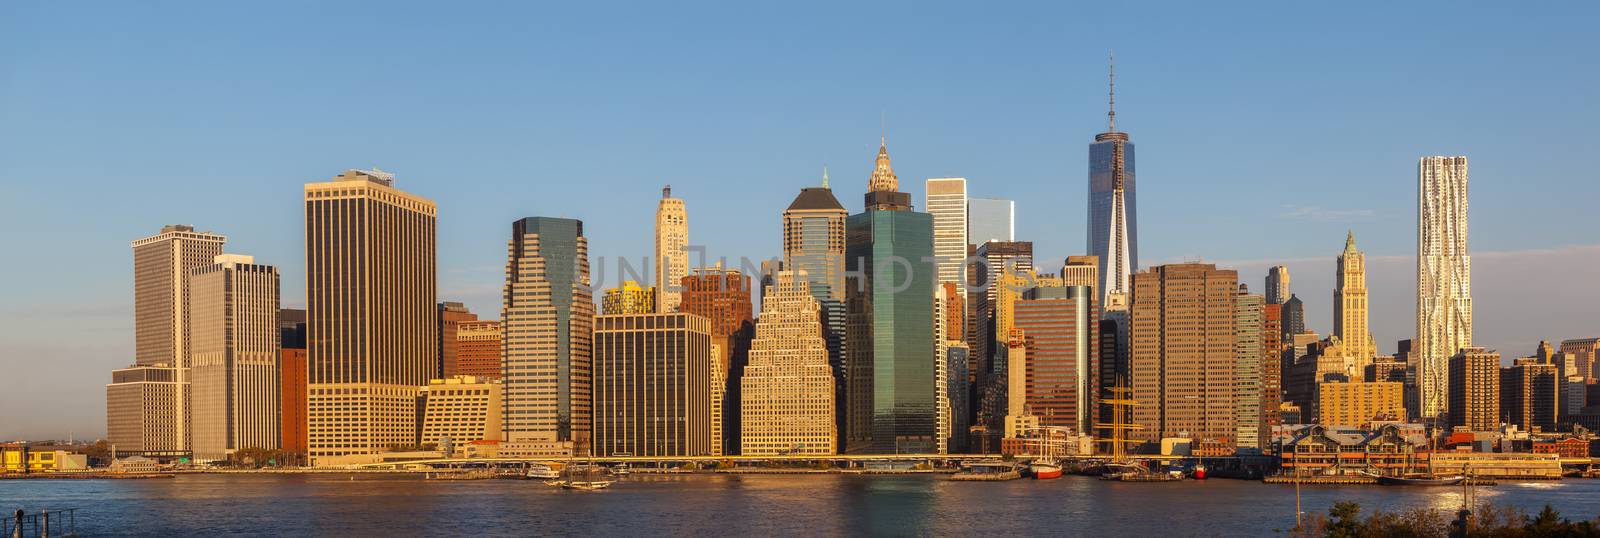 Manhattan by palinchak